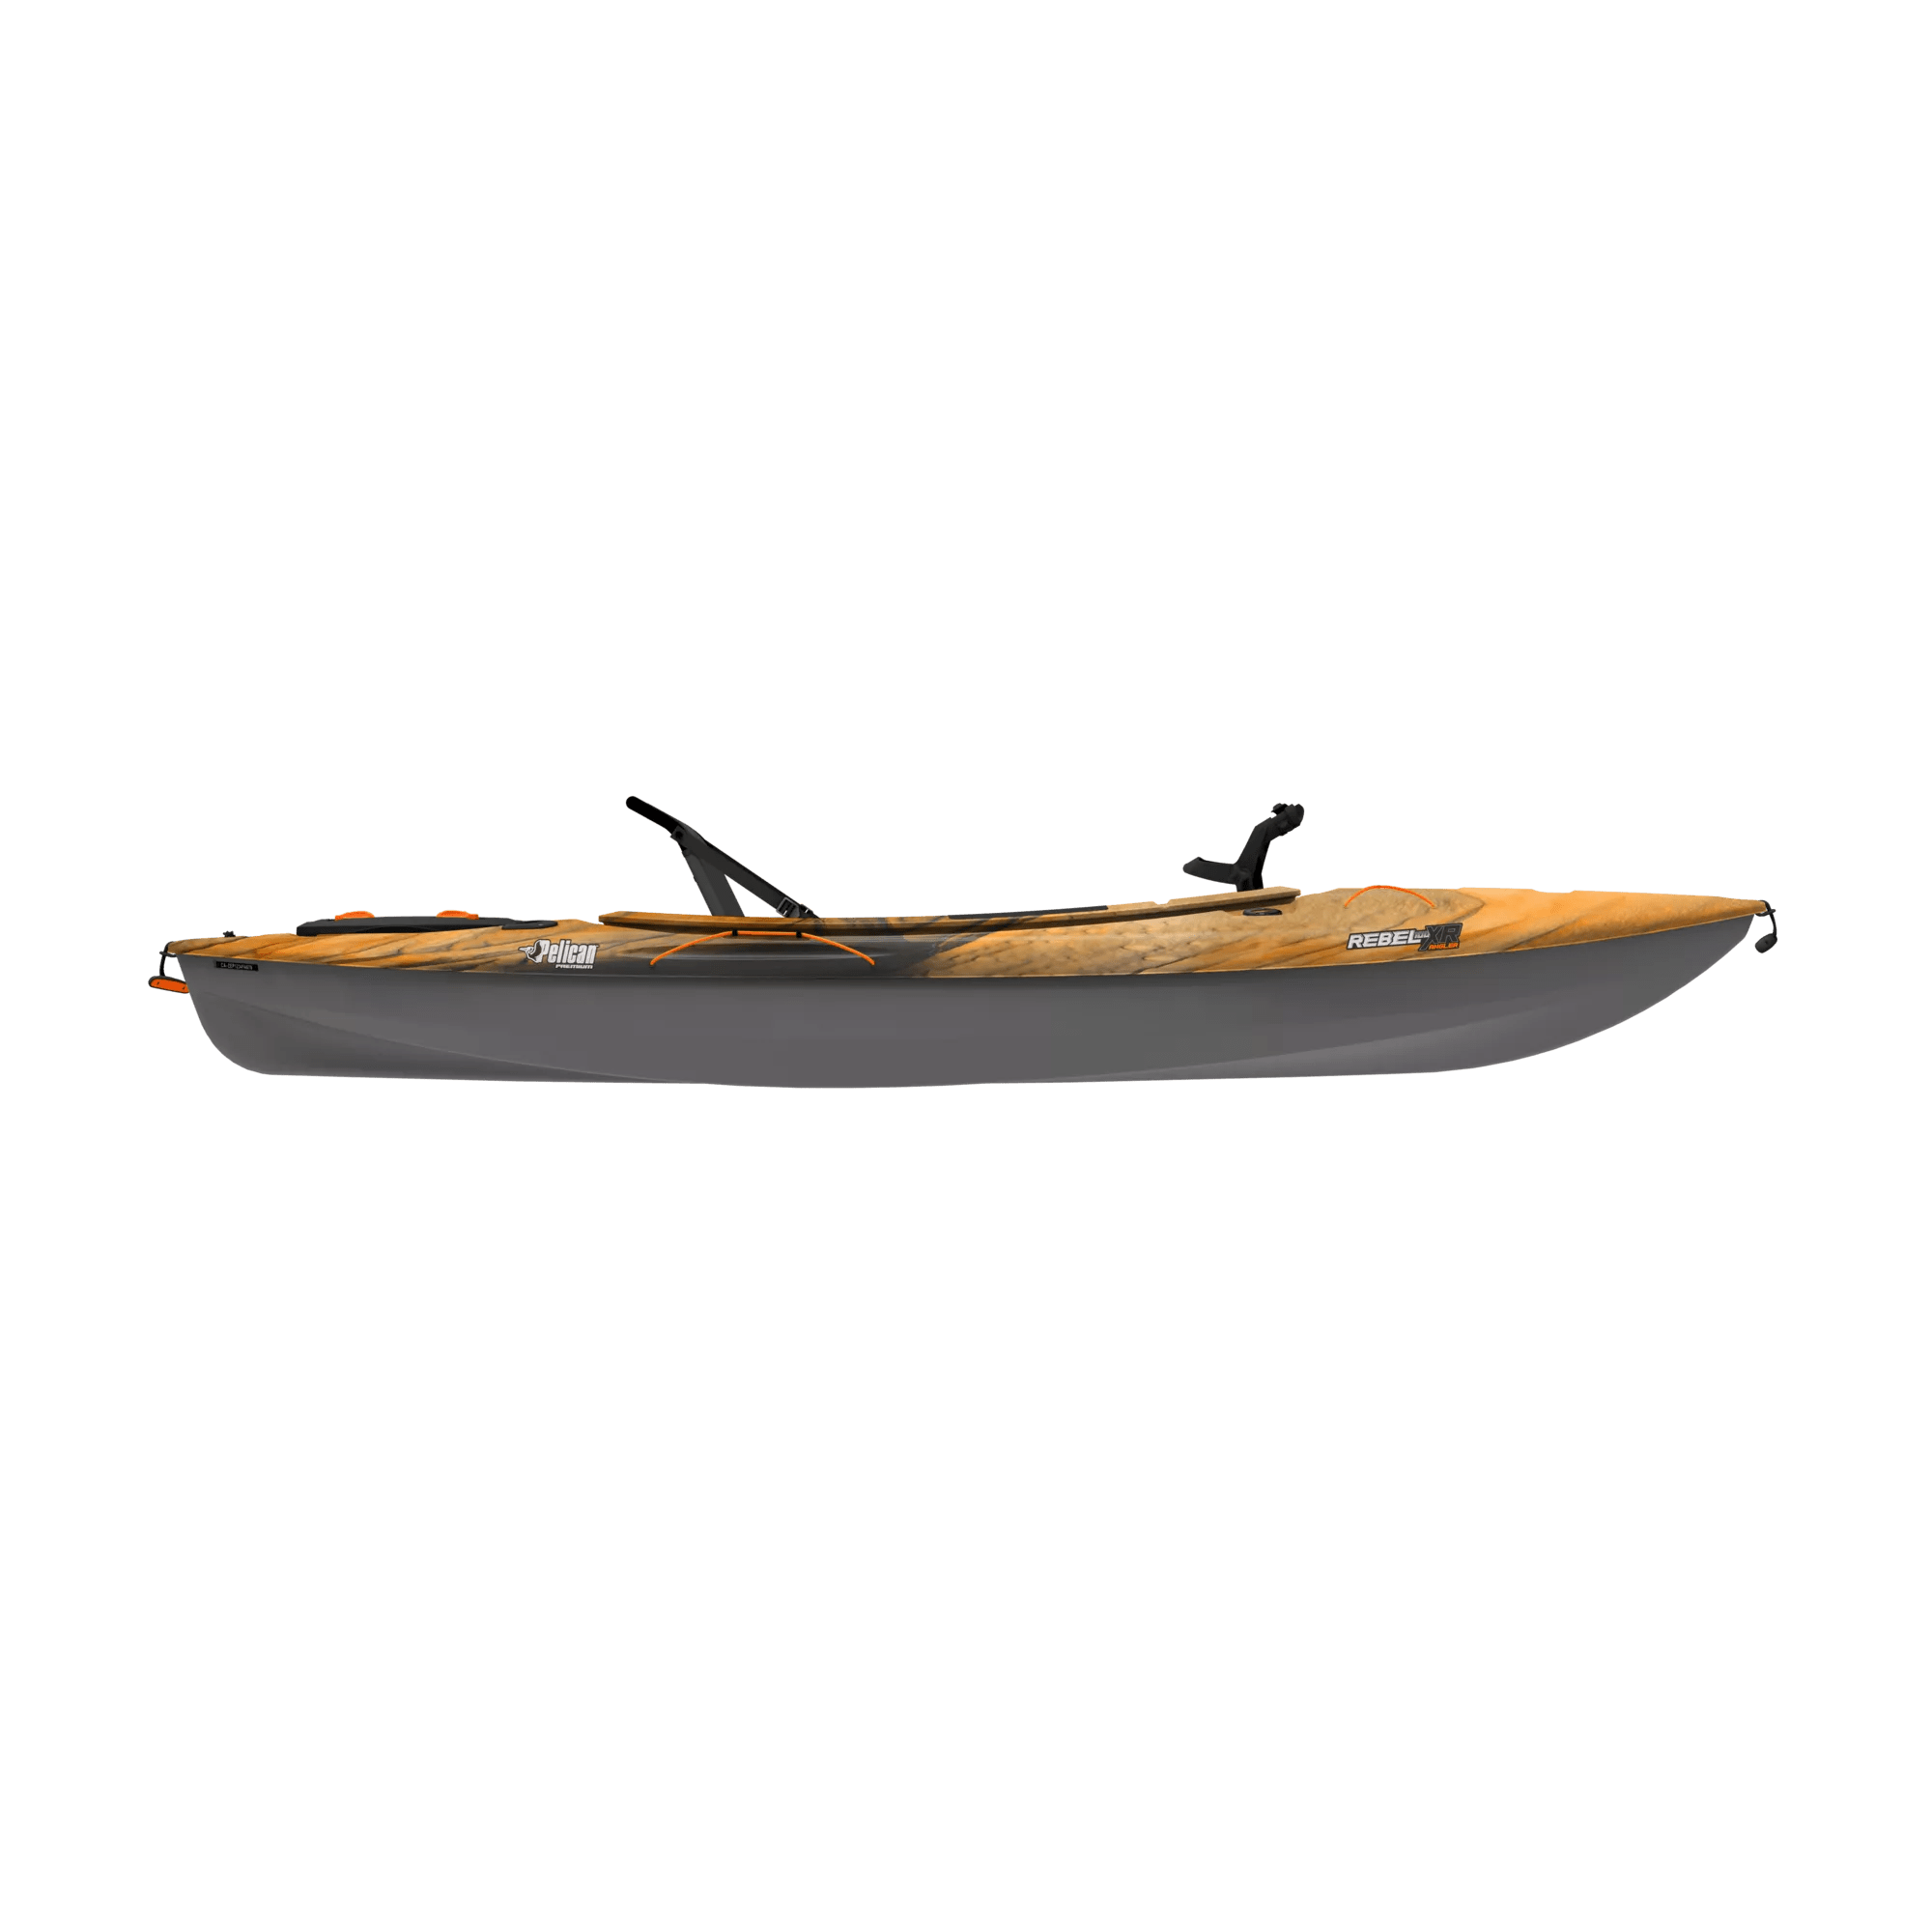 PELICAN - Rebel 100XR Angler Fishing Kayak - Beige - MDP10P700 - SIDE